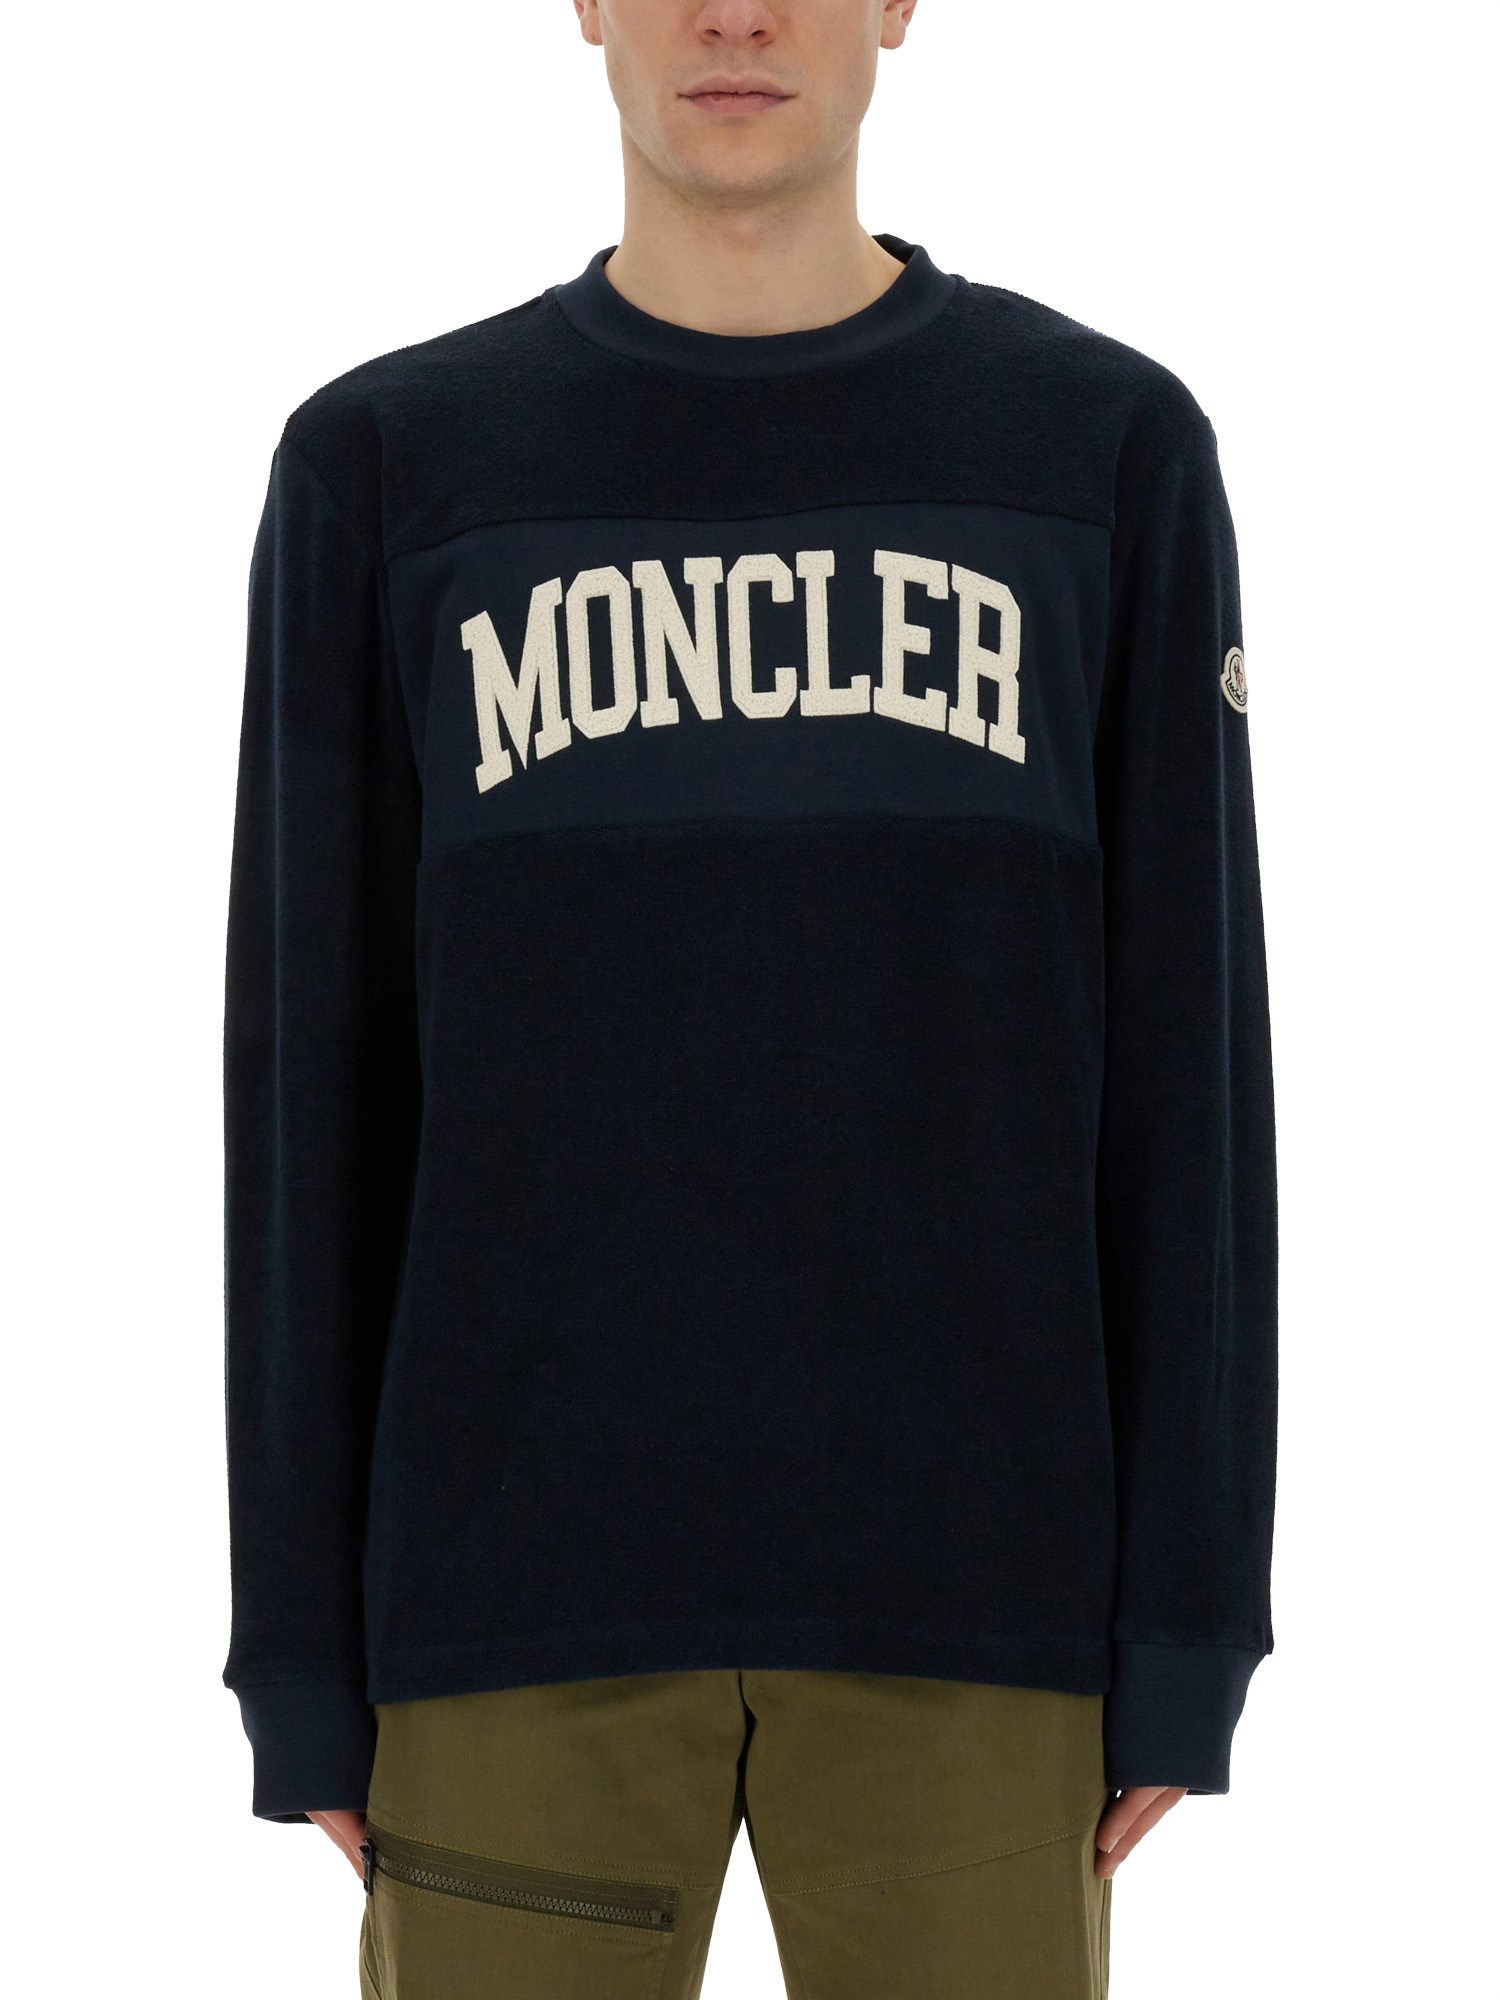 moncler sweatshirt with logo